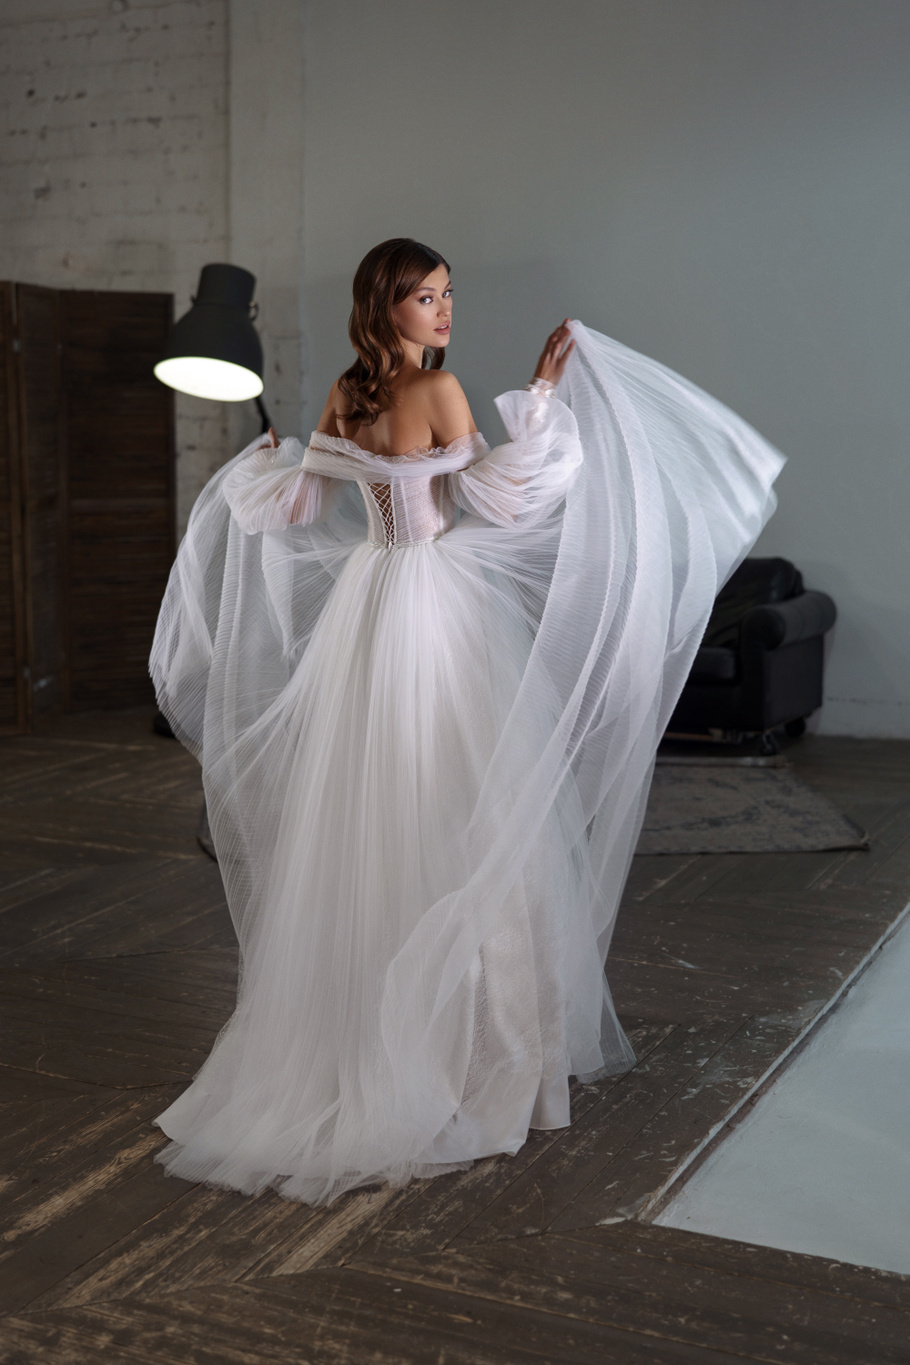 Купить свадебное платье «Фея» Патрисия из коллекции 2020 года в Нижнем Новгороде